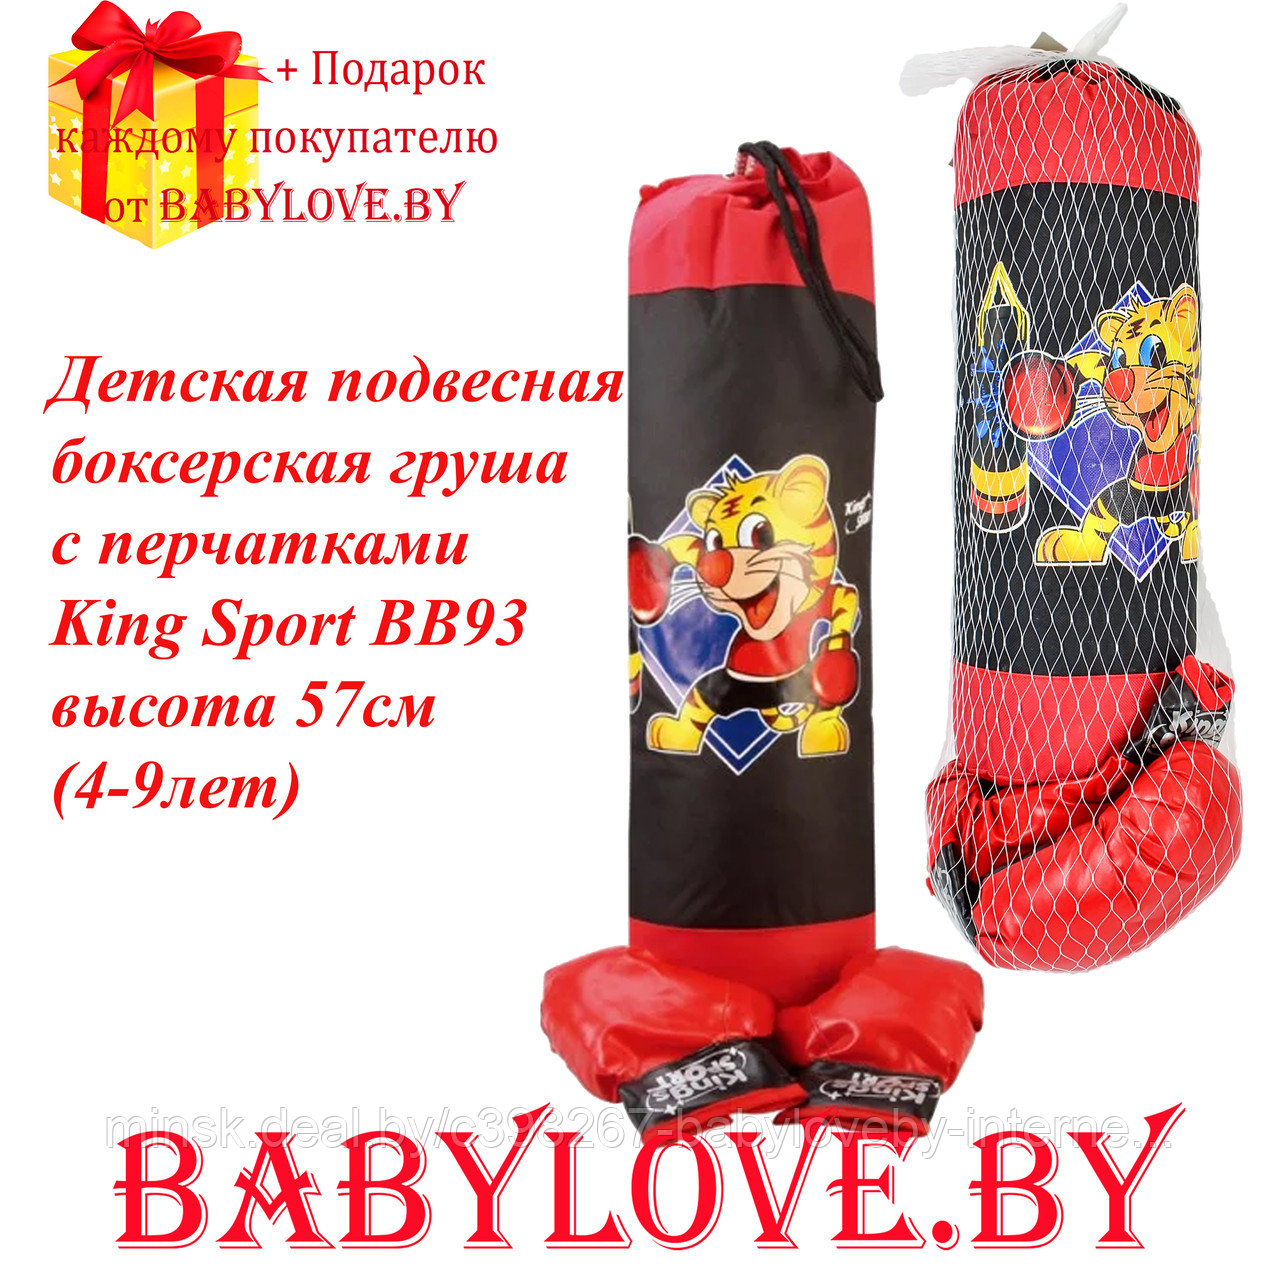 Детская подвесная боксерская груша с перчатками King Sport BB93 высота 57см (4-9 лет)